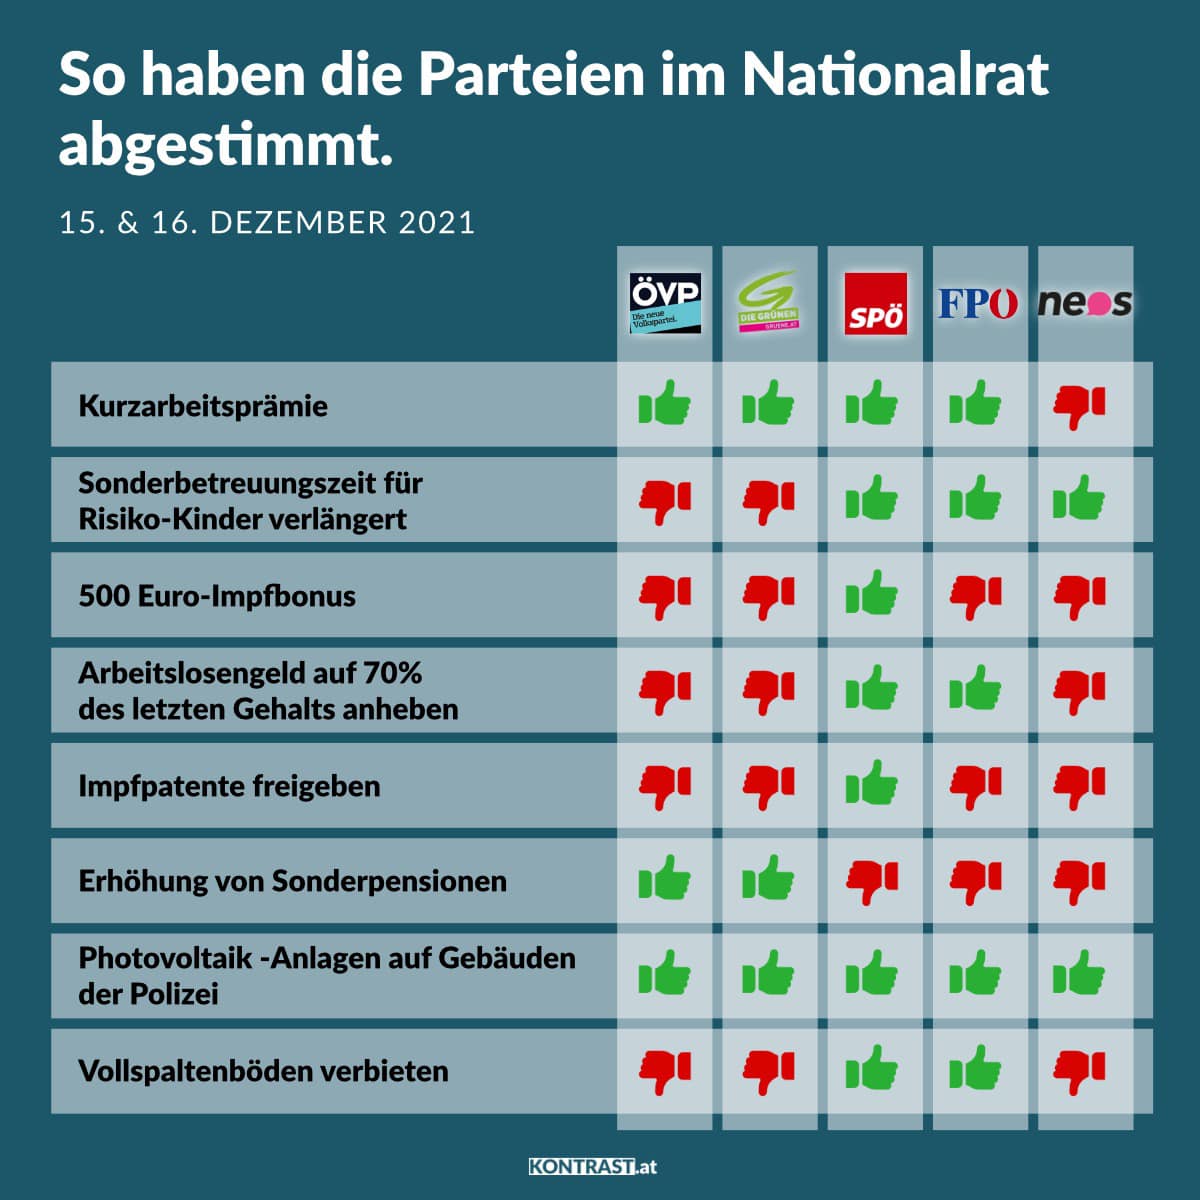 Abstimmungsverhalten im Nationalrat 15./16. Dezember 2021